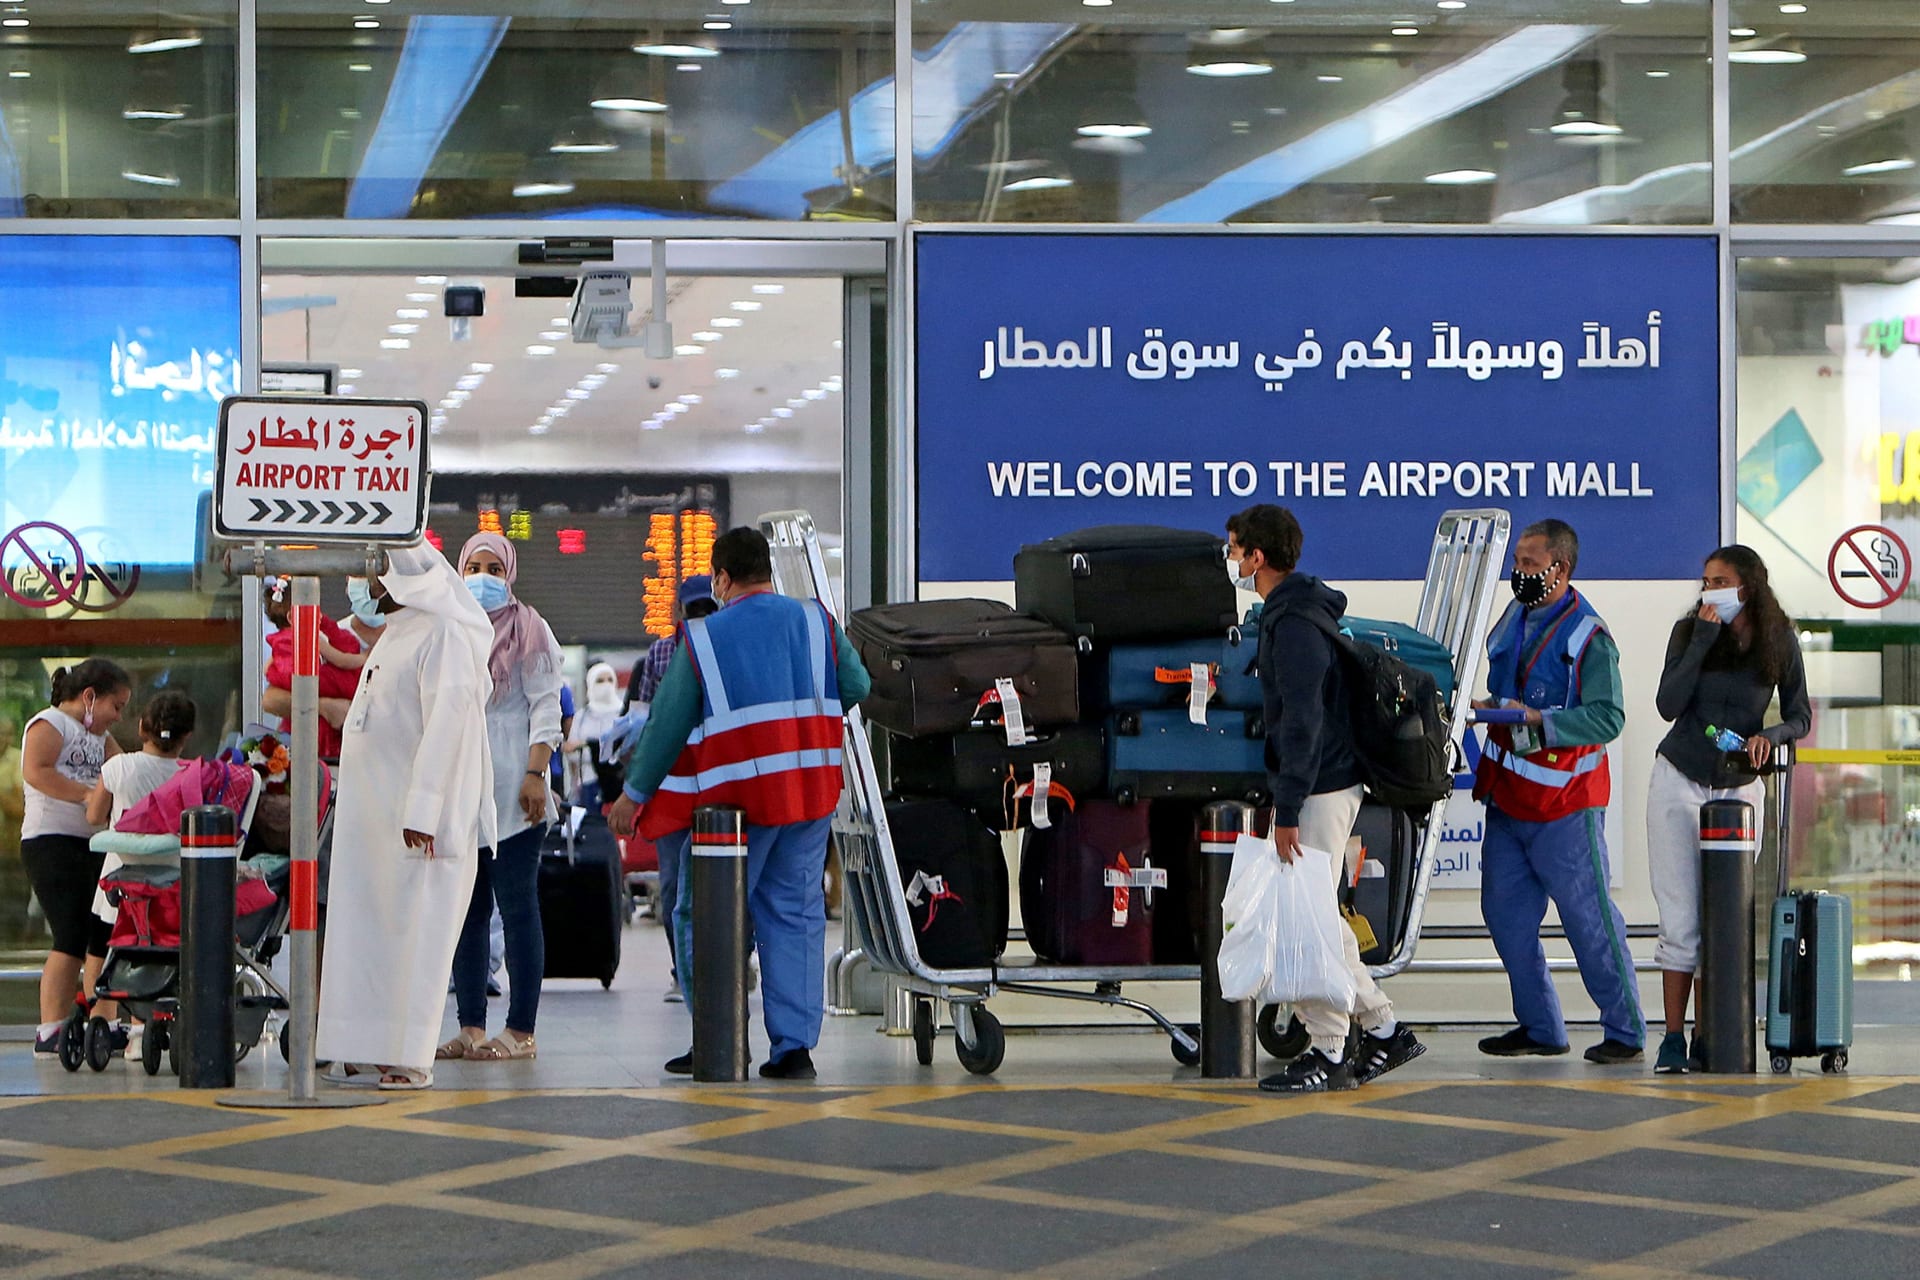 وزارة الداخلية الكويتية تُعلق على أنباء فتح التأشيرات لبعض الجنسيات